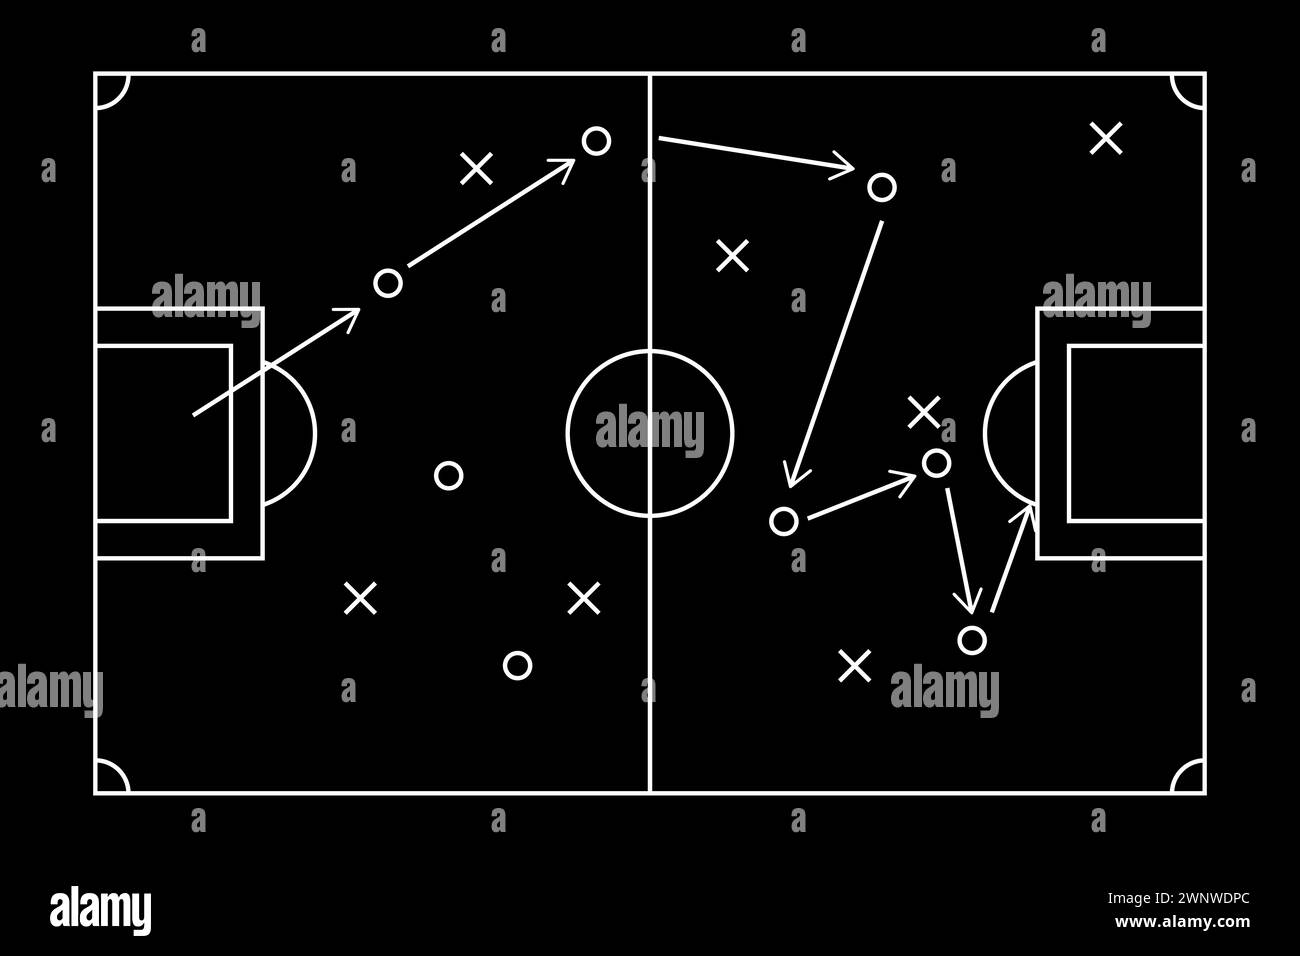 Fußball Strategie Fußball Spiel taktisches Schema auf Tafel. Stock Vektor